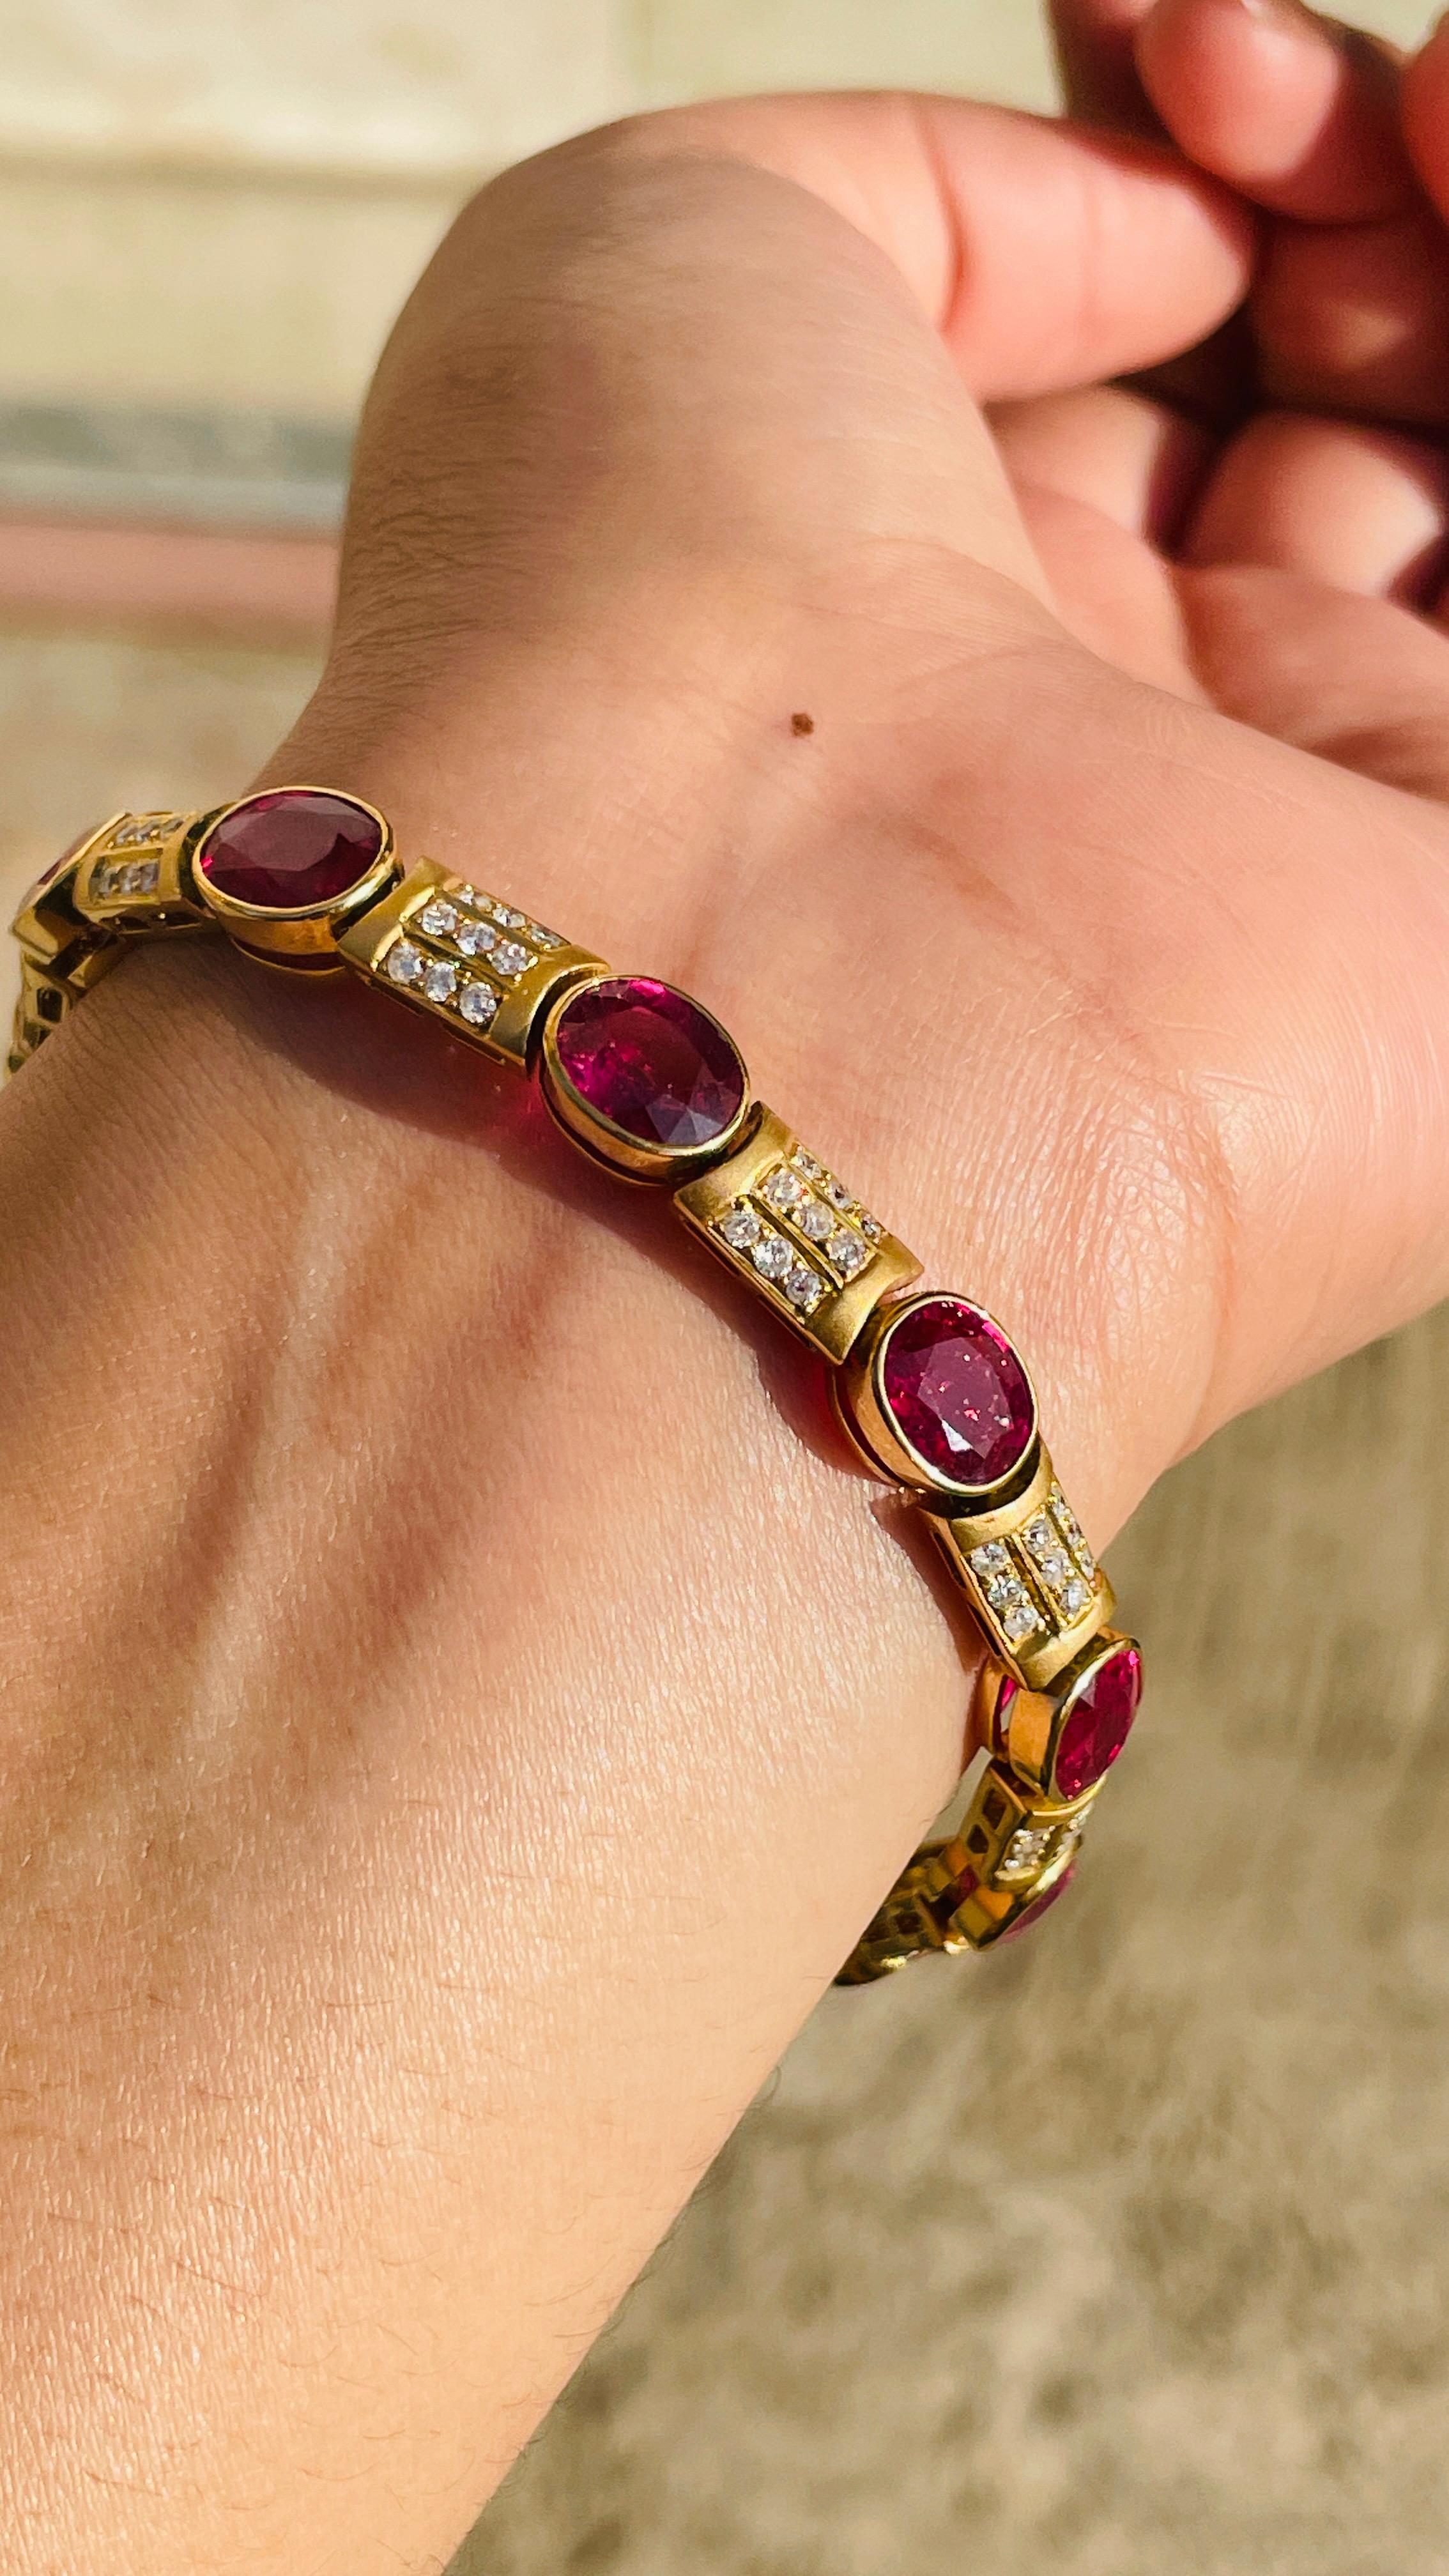 Armband mit Rubinen und Diamanten aus 18 Karat Gold. Es hat einen perfekten ovalen Schliff Edelstein zu machen Sie stehen auf jeder Gelegenheit oder ein Ereignis.
Ein Tennisarmband ist ein wichtiges Schmuckstück für Ihren Hochzeitstag. Der schlichte